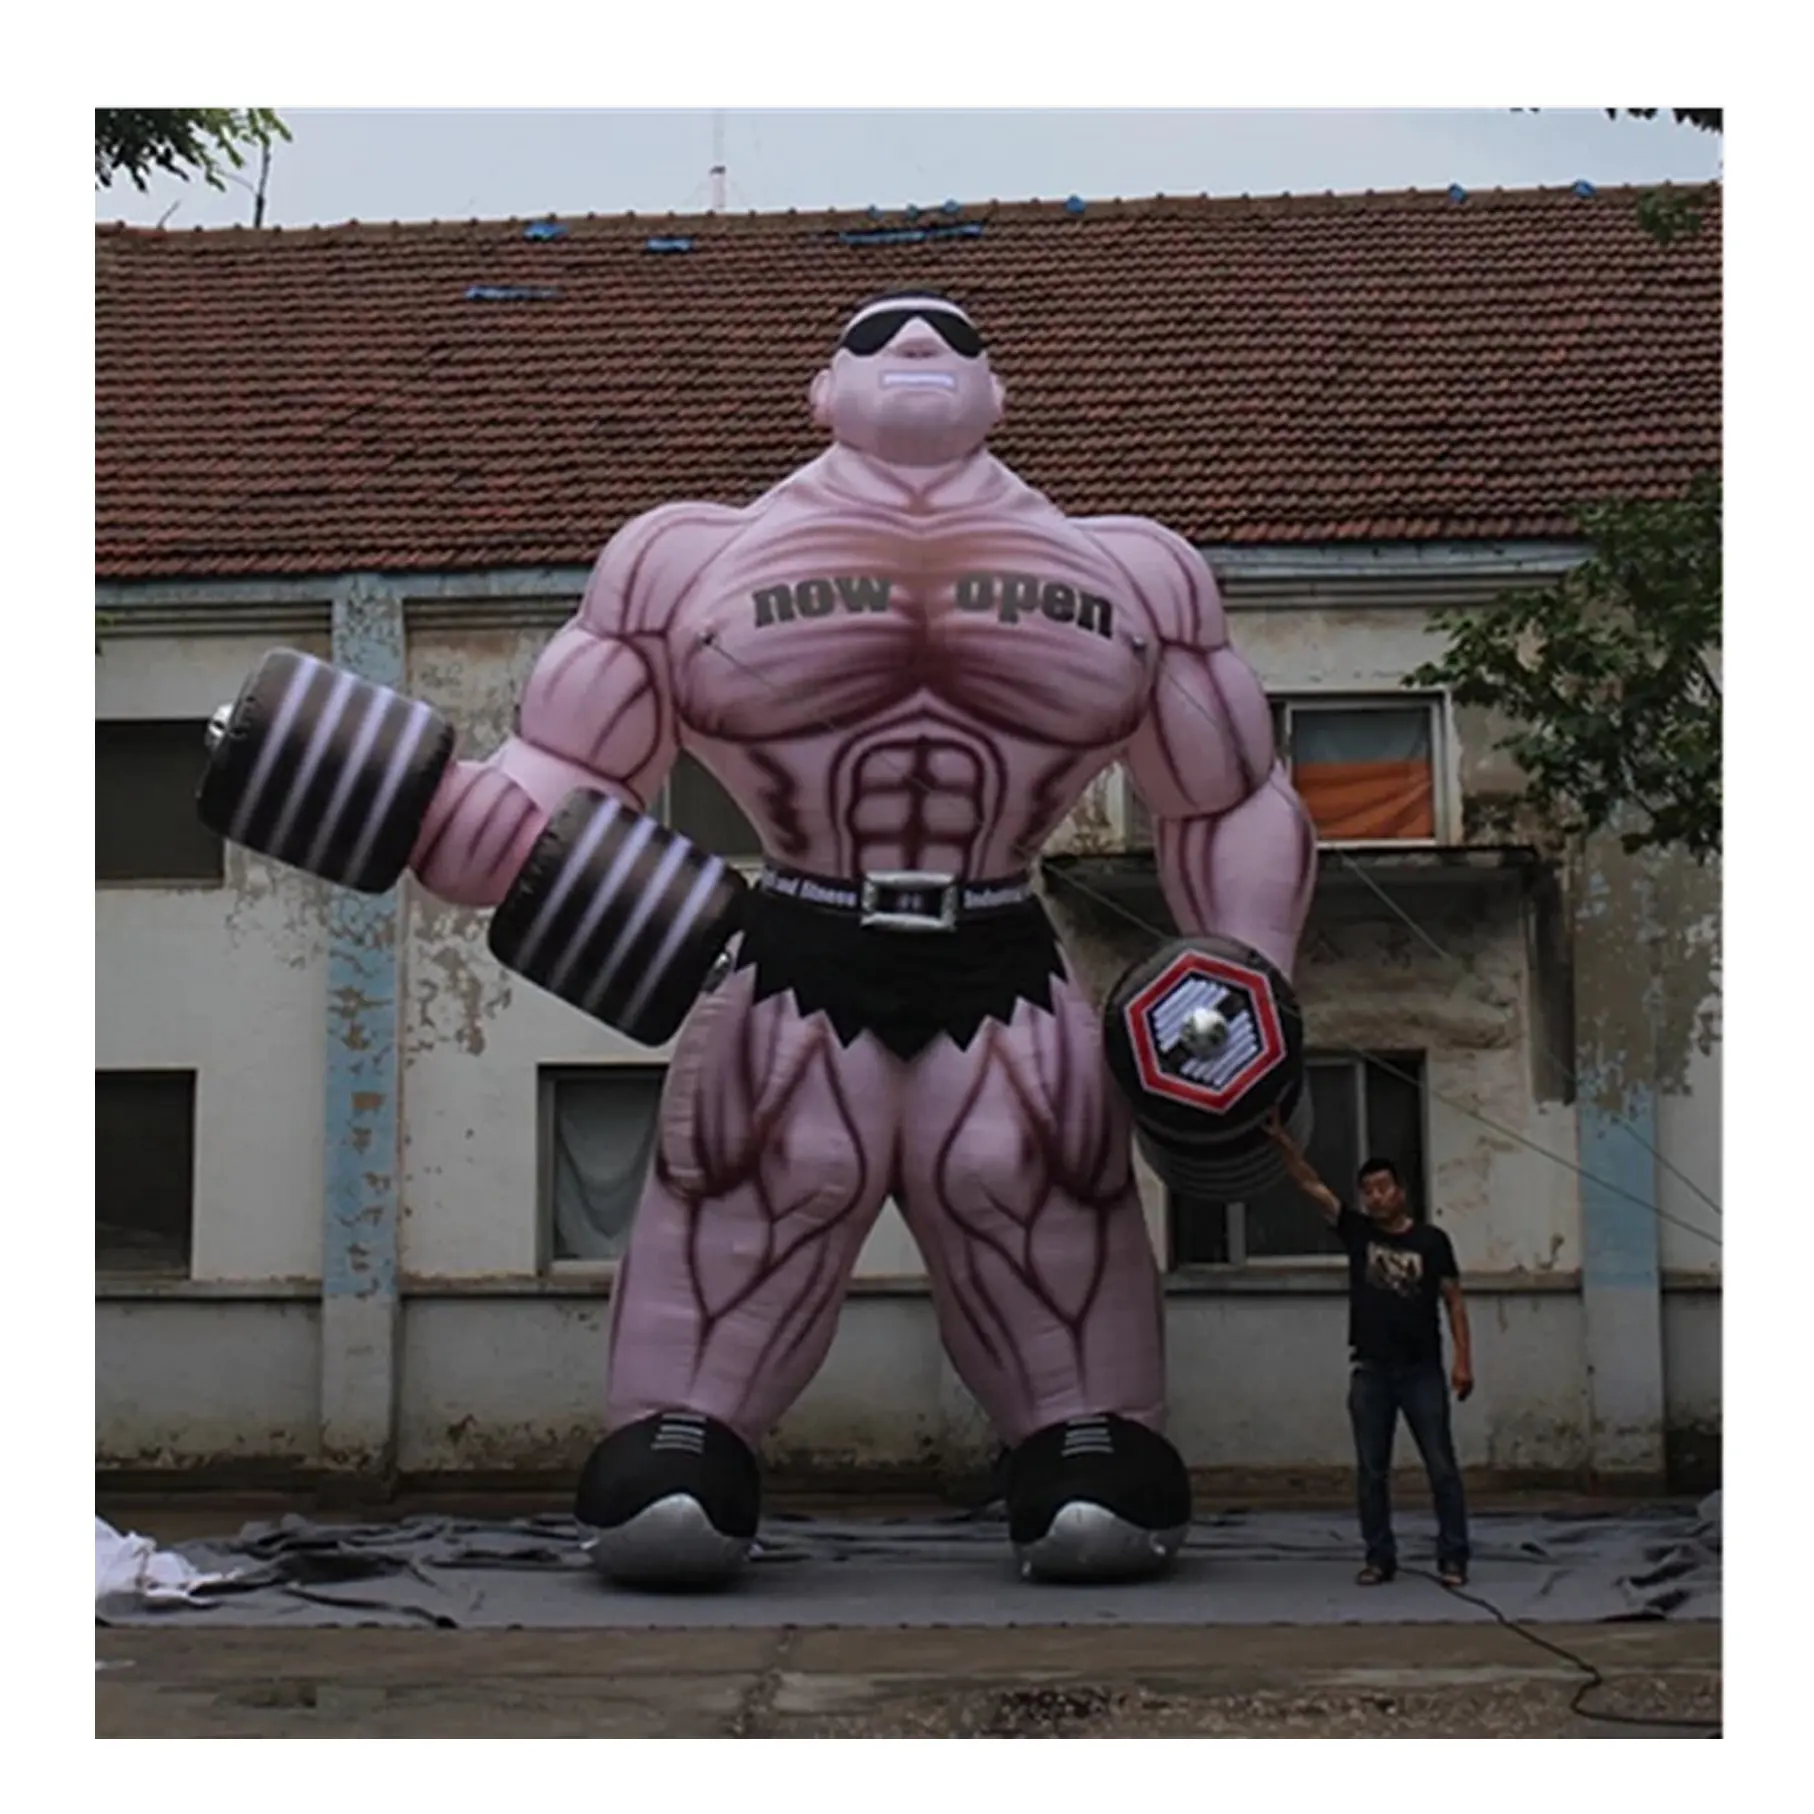 Musculoso inflable gigante para hombre, accesorio de Fitness para gimnasio, Club, publicidad, hecho a medida, 25 pies de alto